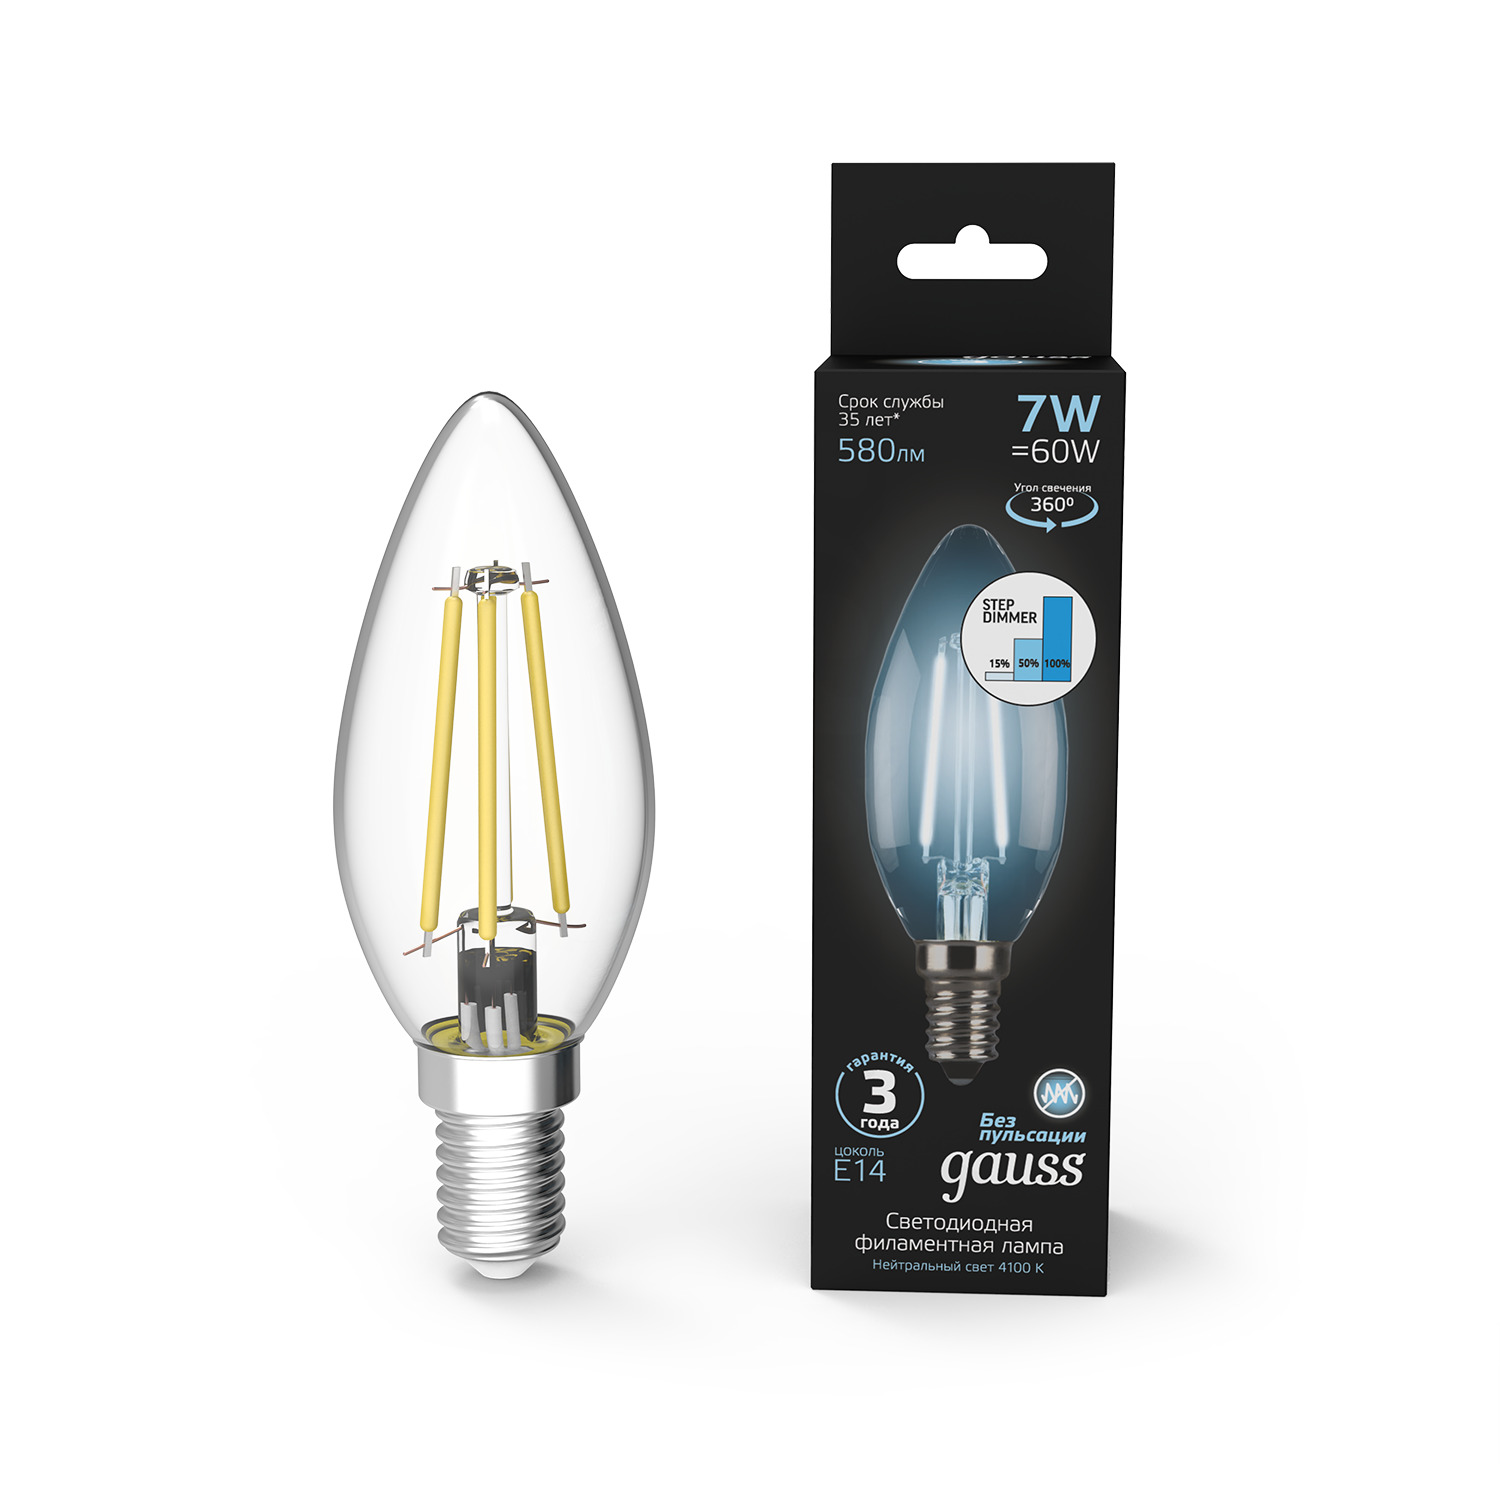 Лампа Gauss LED Filament Свеча E14 7W 580lm 4100К step dimmable 1/10/50 лампа gauss led filament свеча e14 7w 580lm 4100к step dimmable 1 10 50